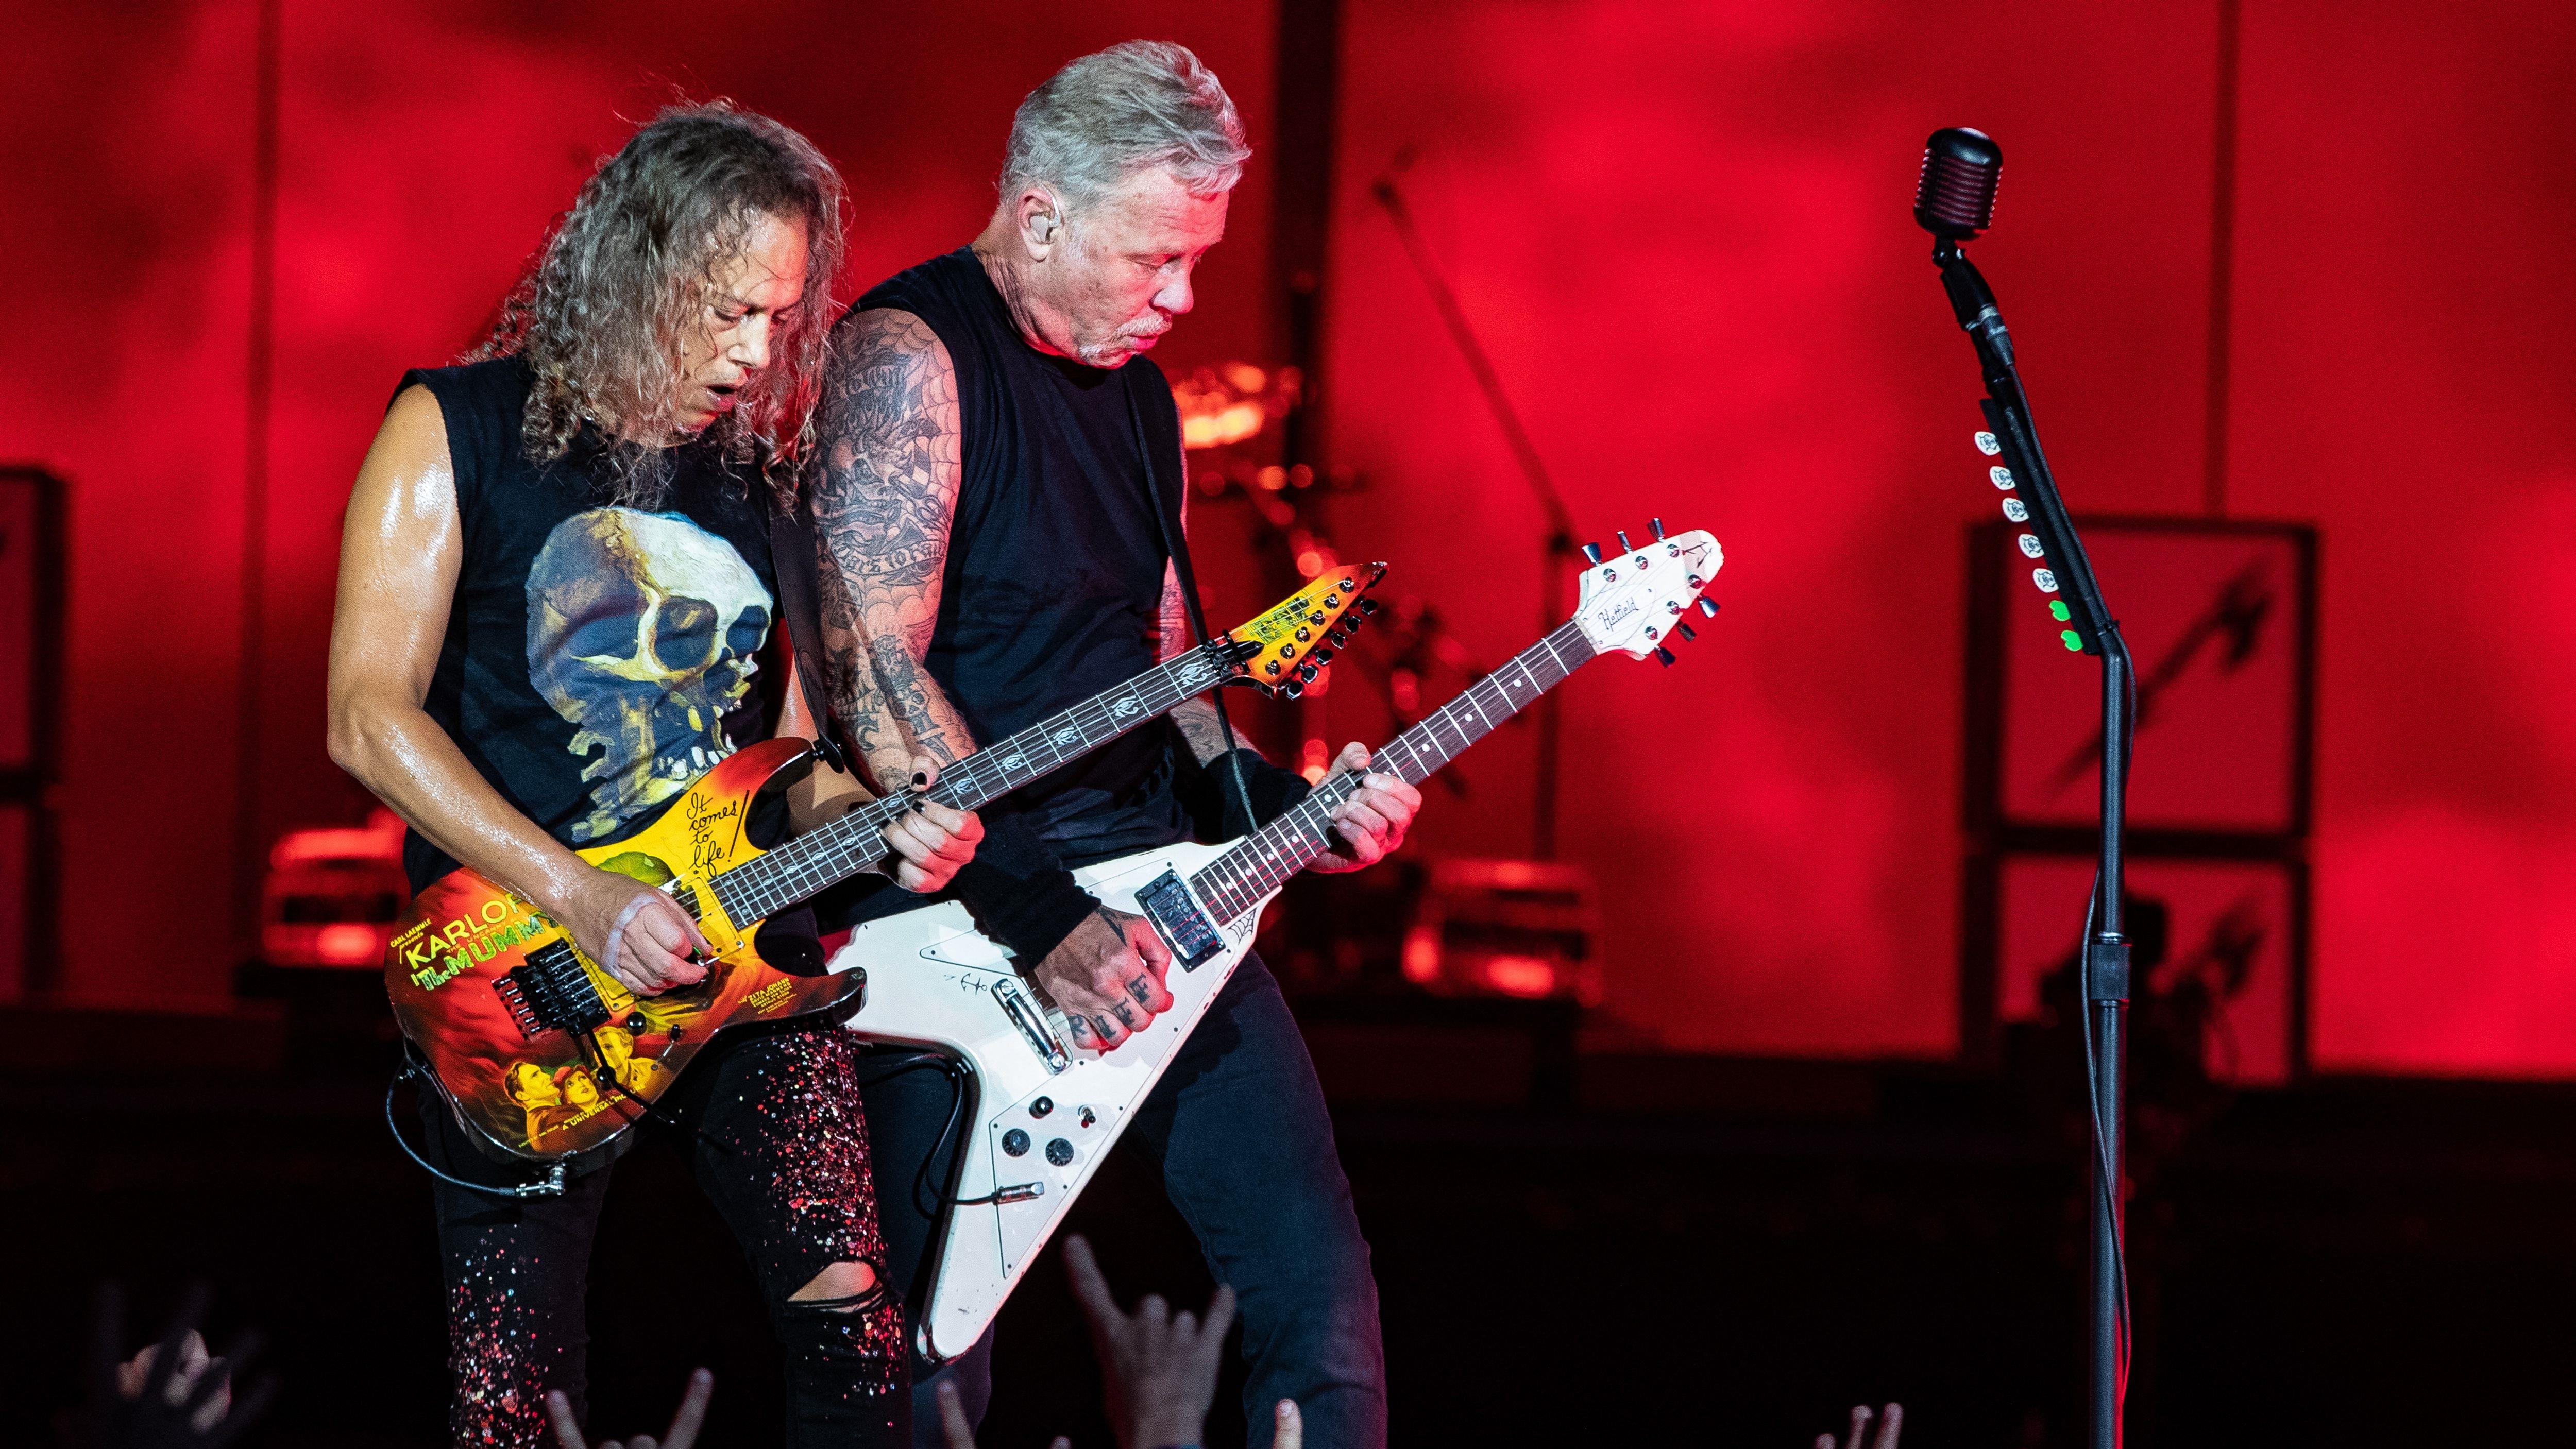 Le test raté (mais triomphal quand même) de Metallica au Stade olympique